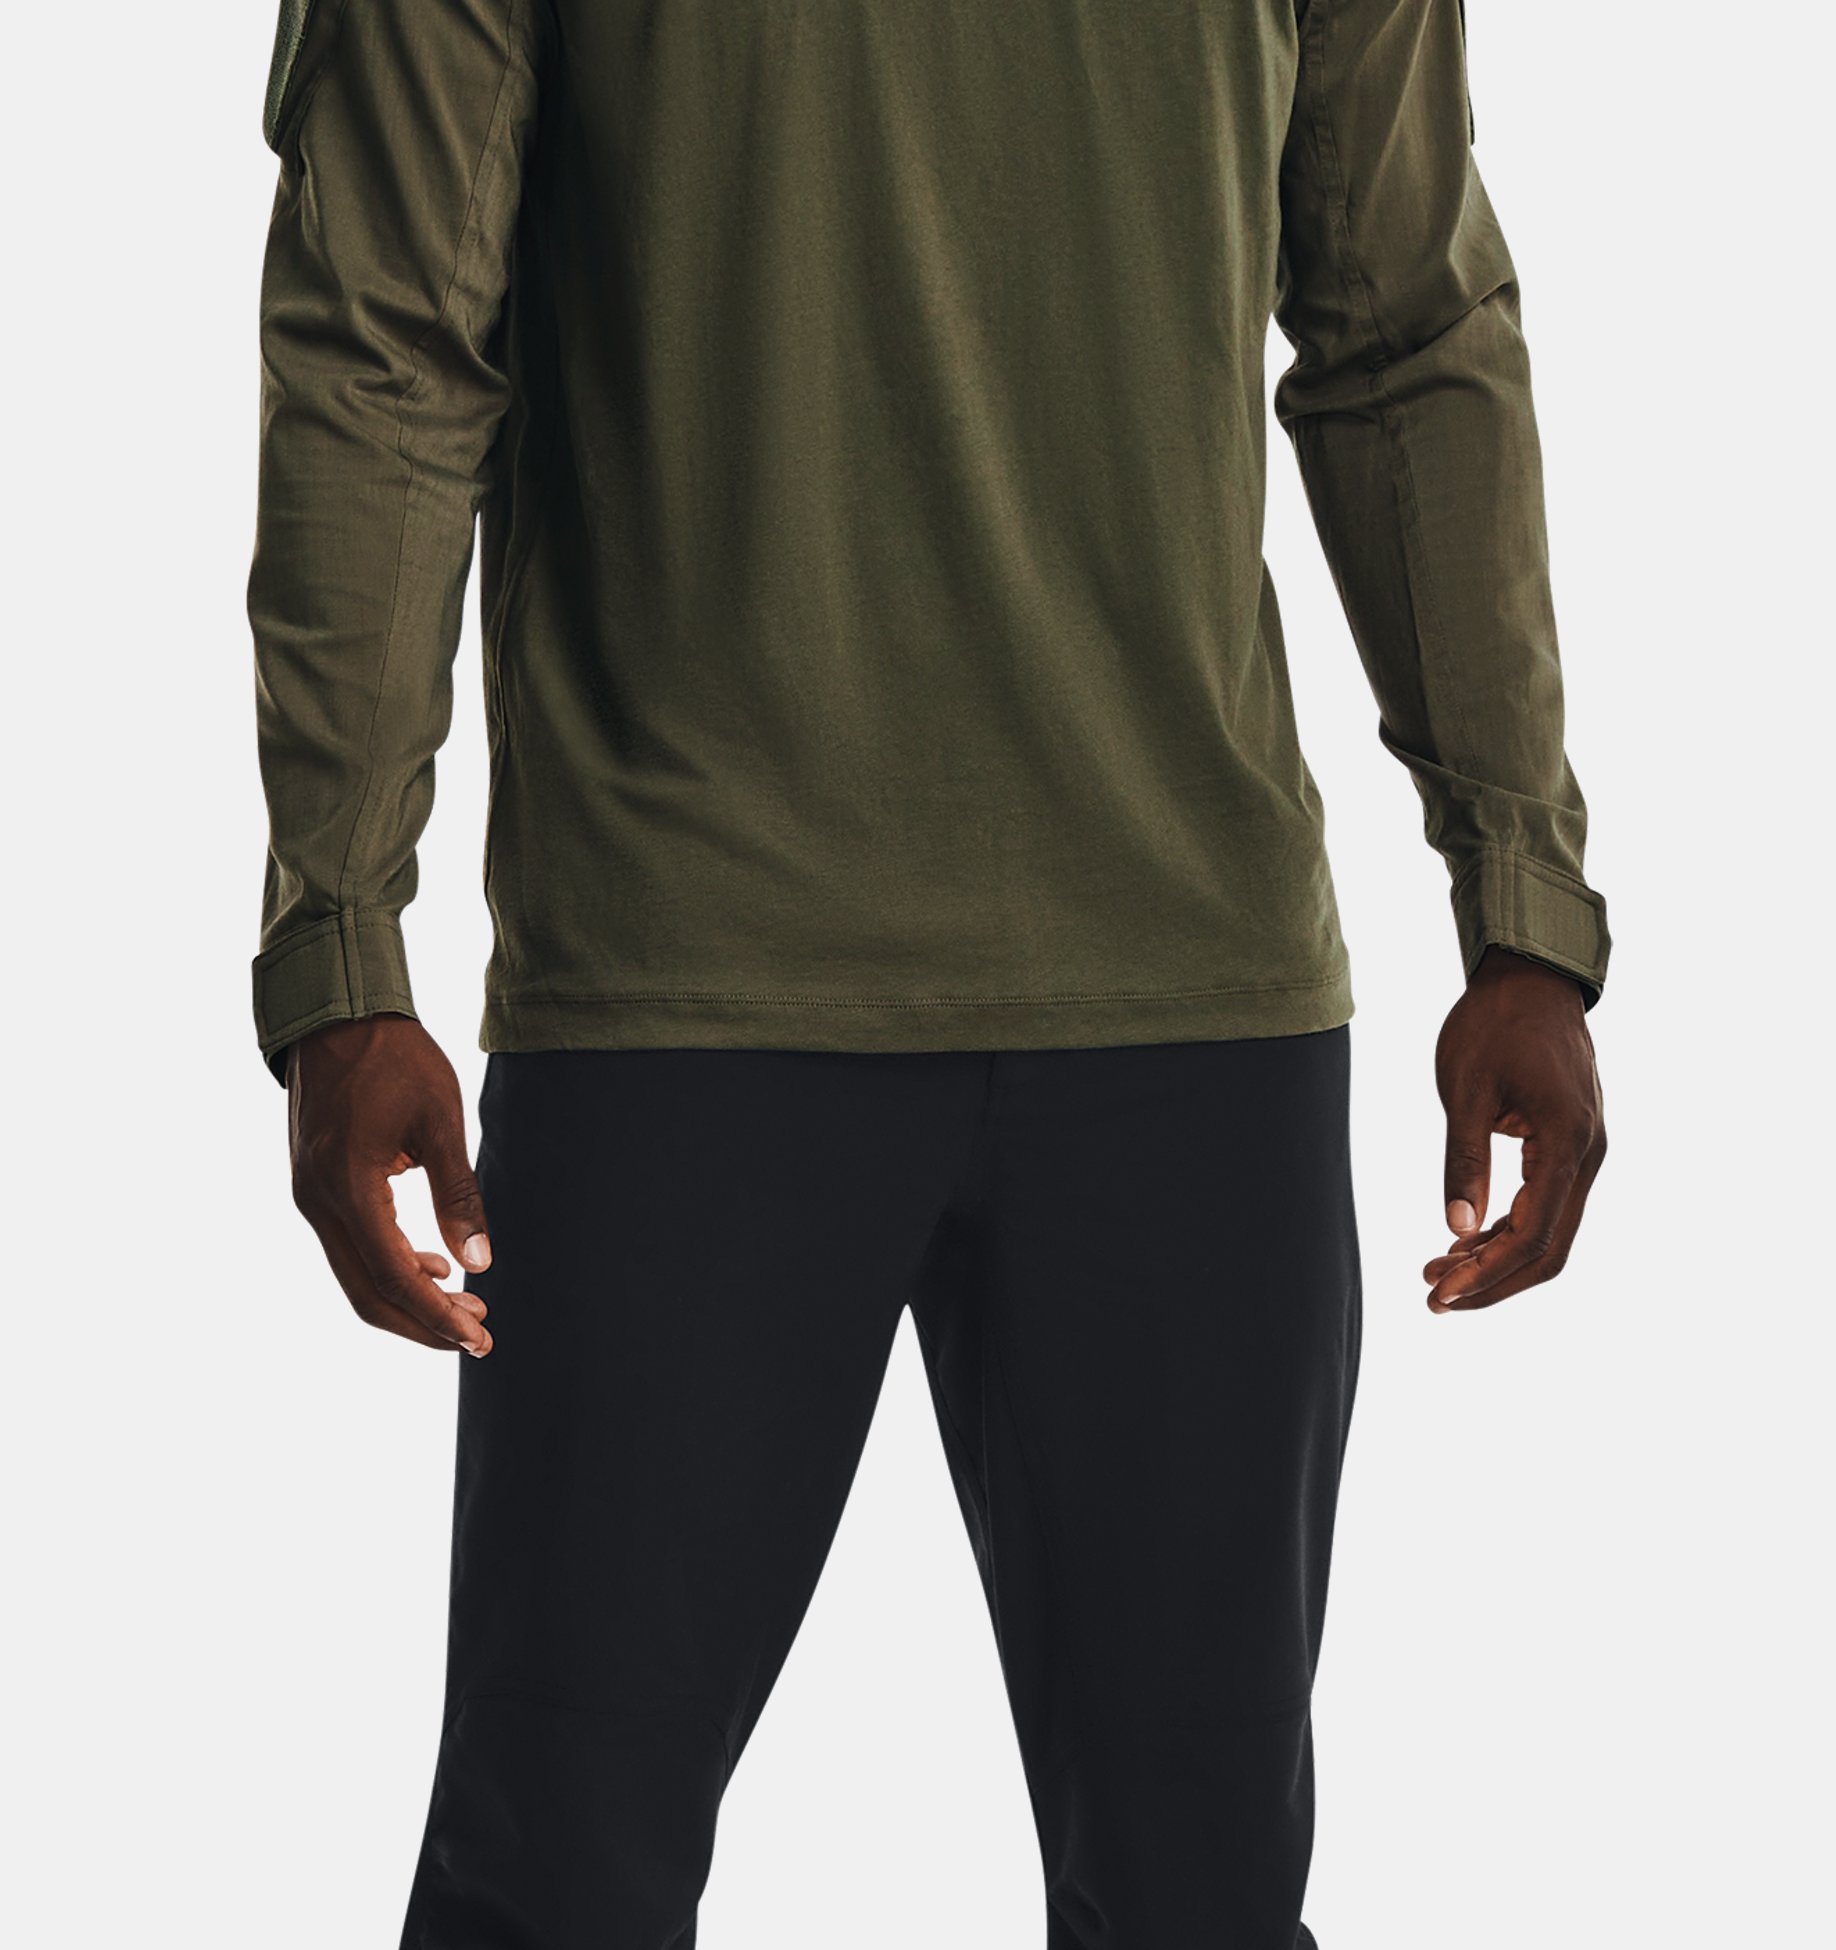 Men's UA Combat Shirt 2.0 Under Armour